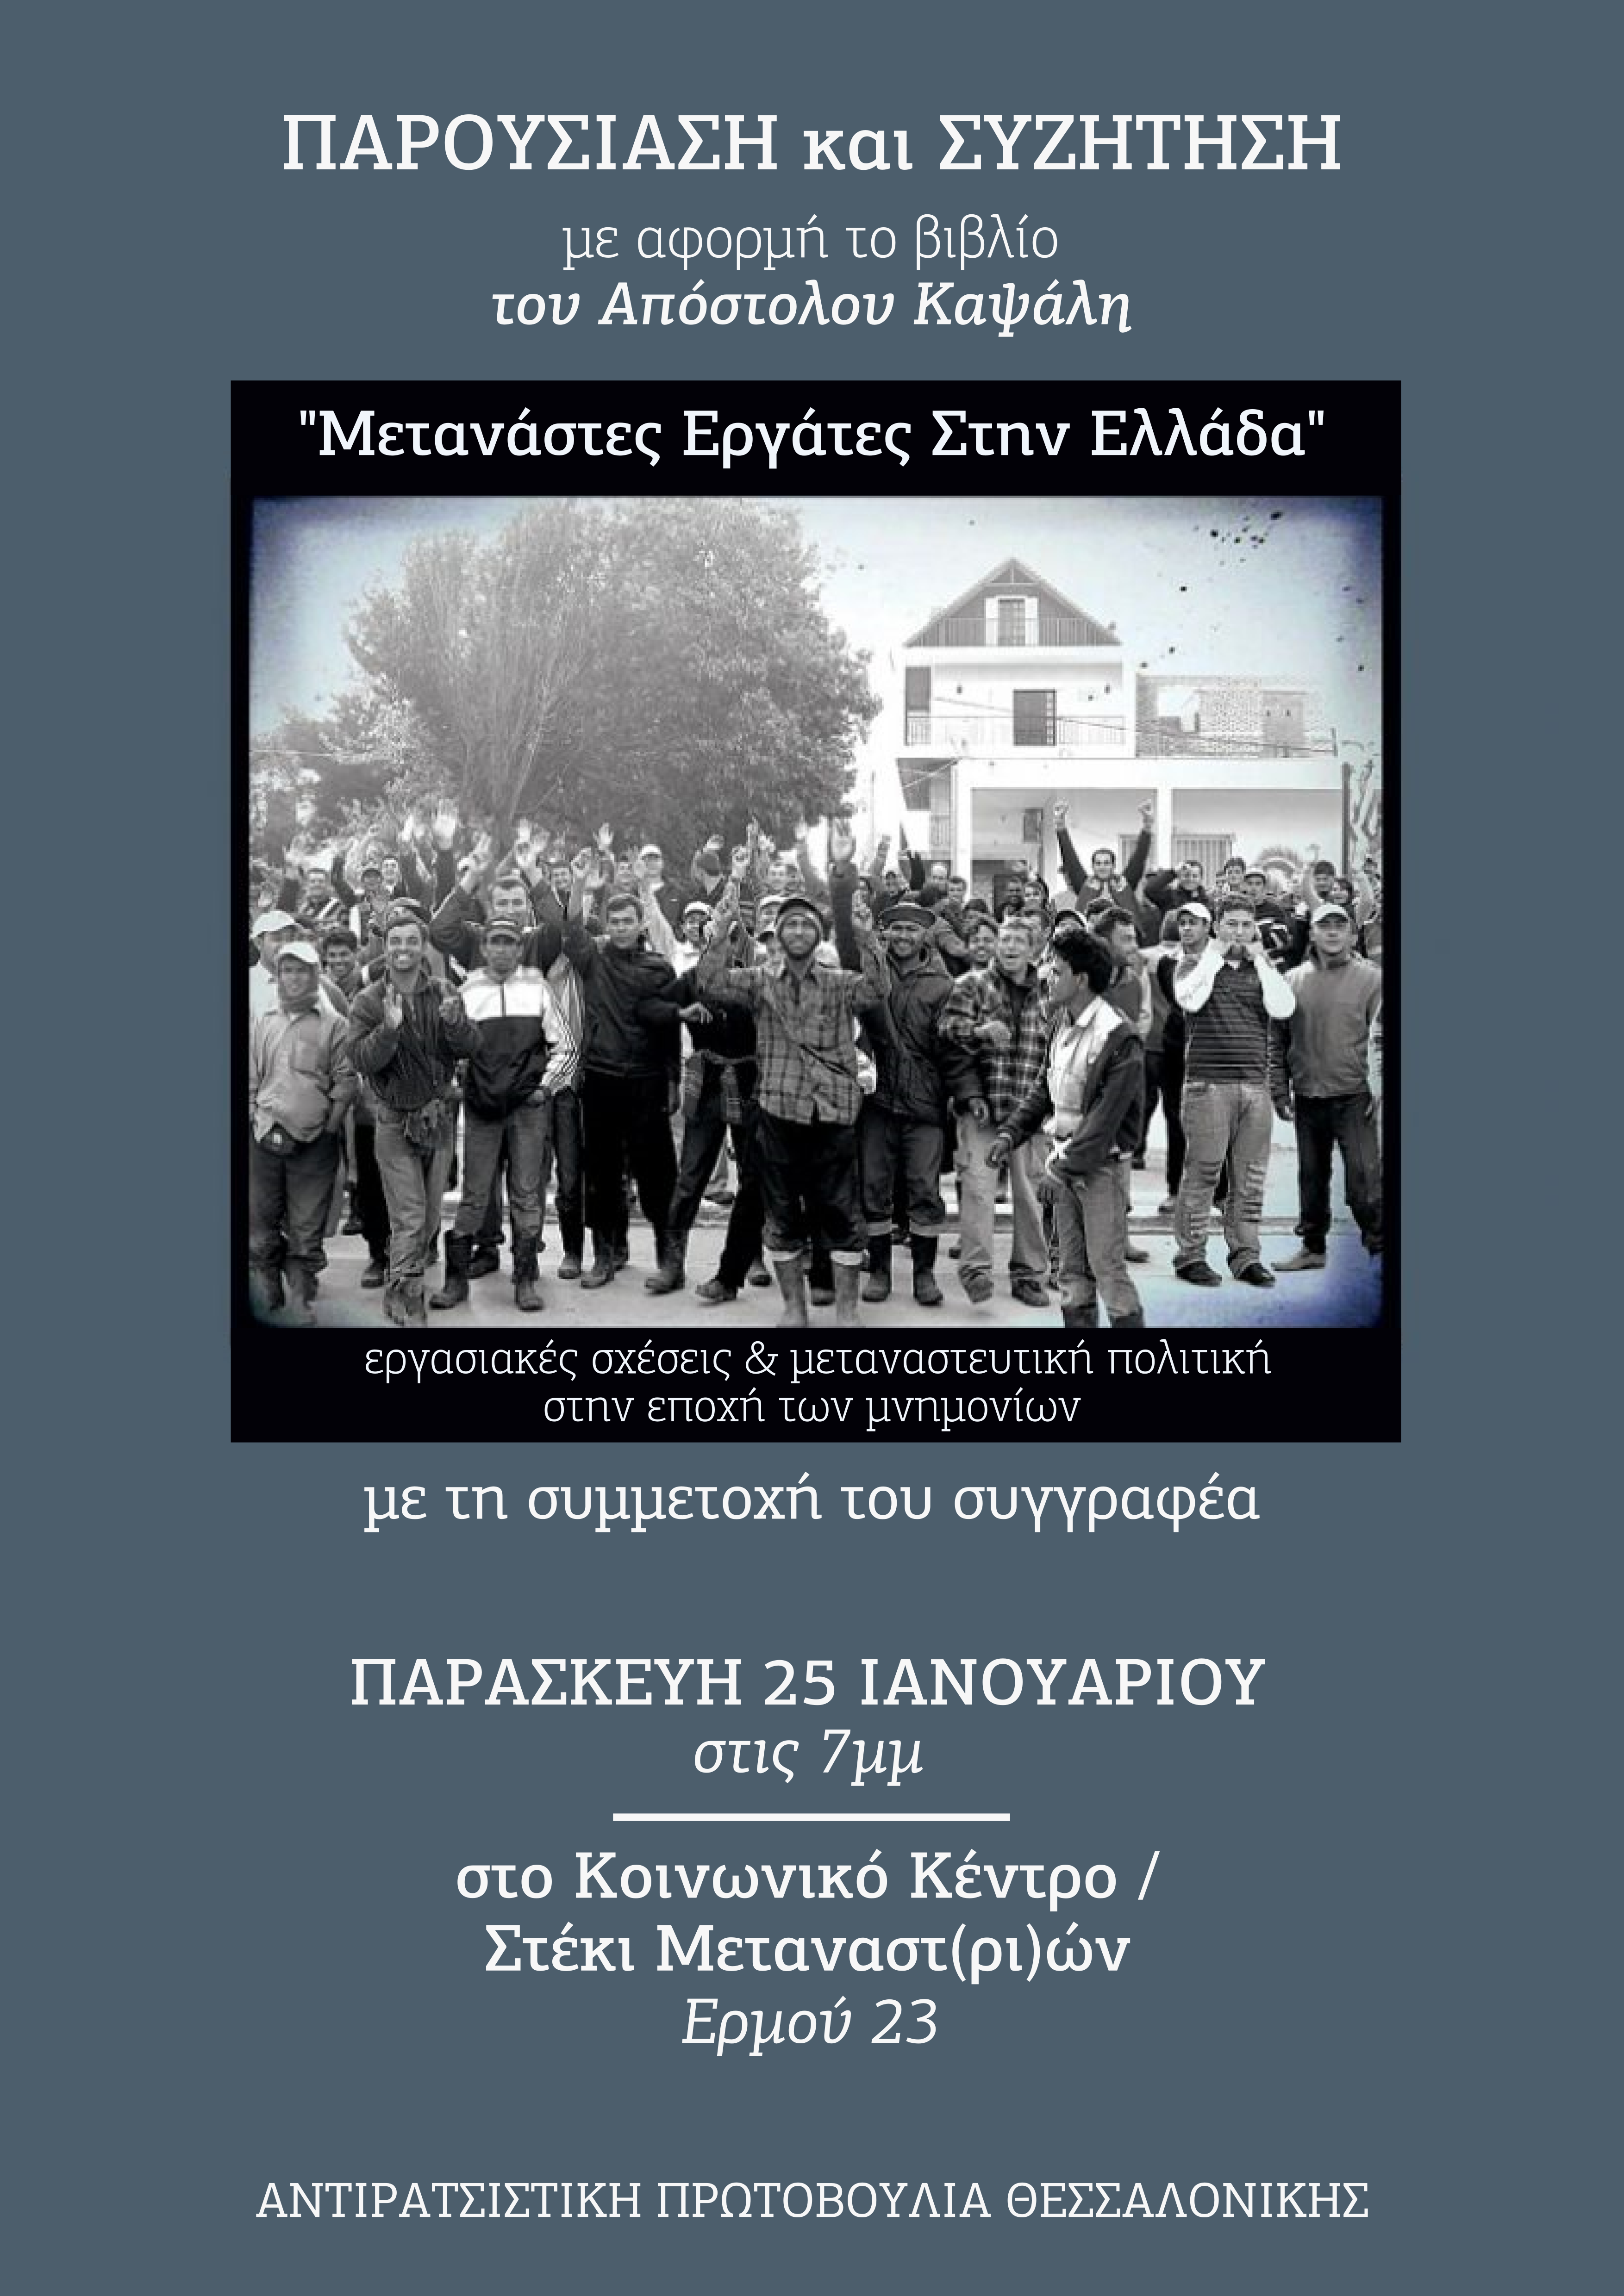 Μετανάστες εργάτες στην Ελλάδα-Βιβλιοπαρουσίαση στο Στέκι Μεταναστών στη Θεσσαλονίκη